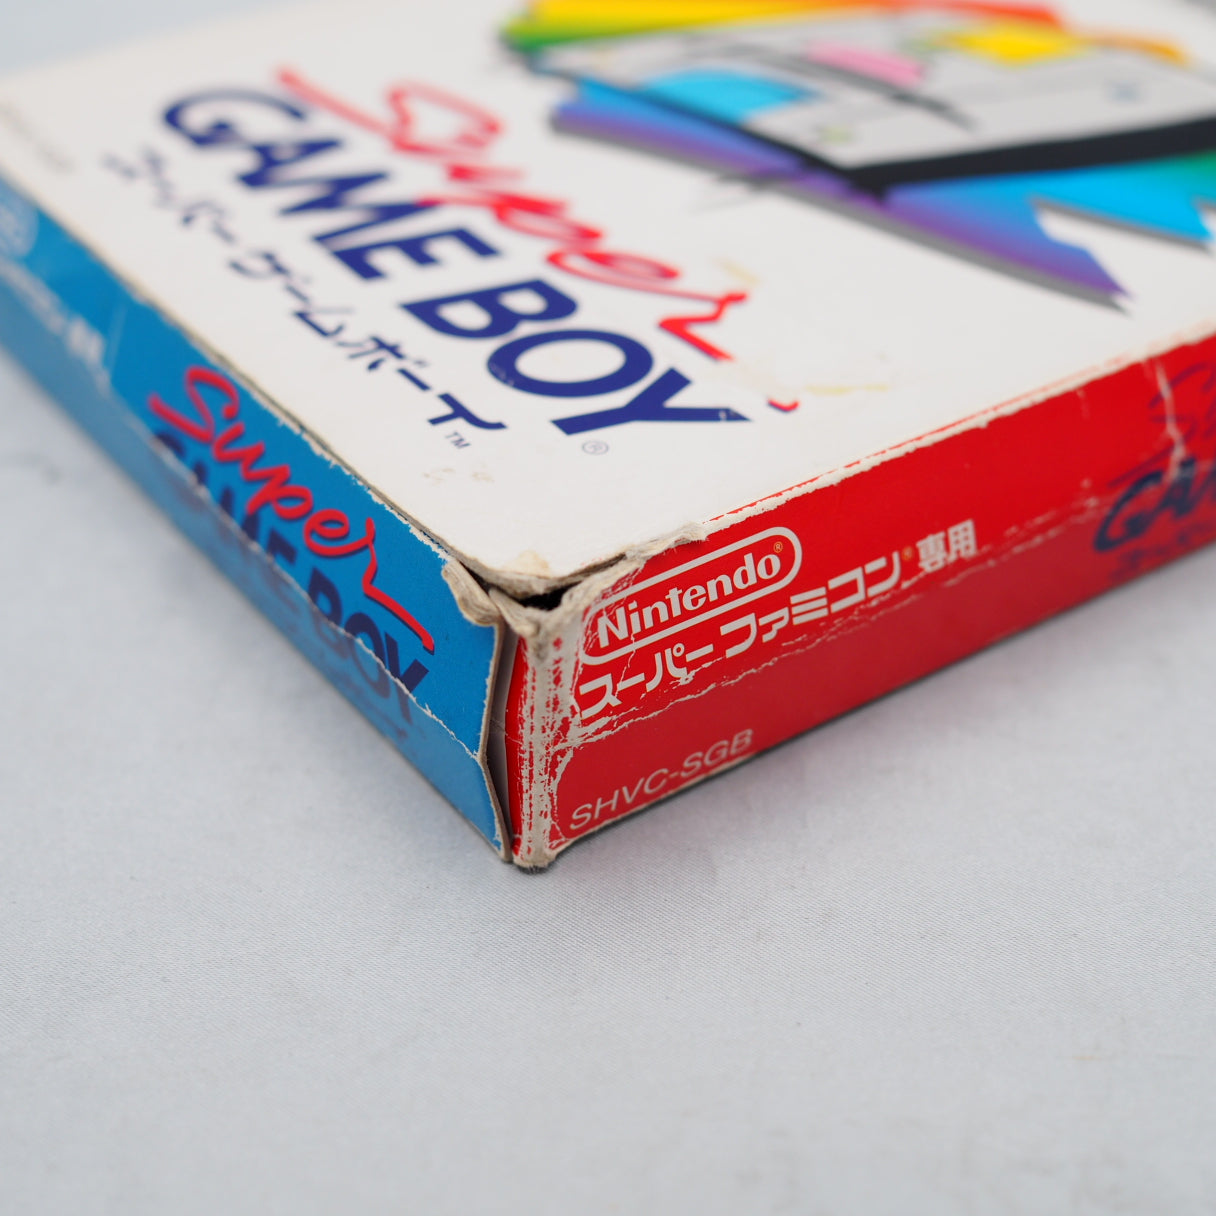 Super GAME BOY [for Nintendo Super Famicom] No.2